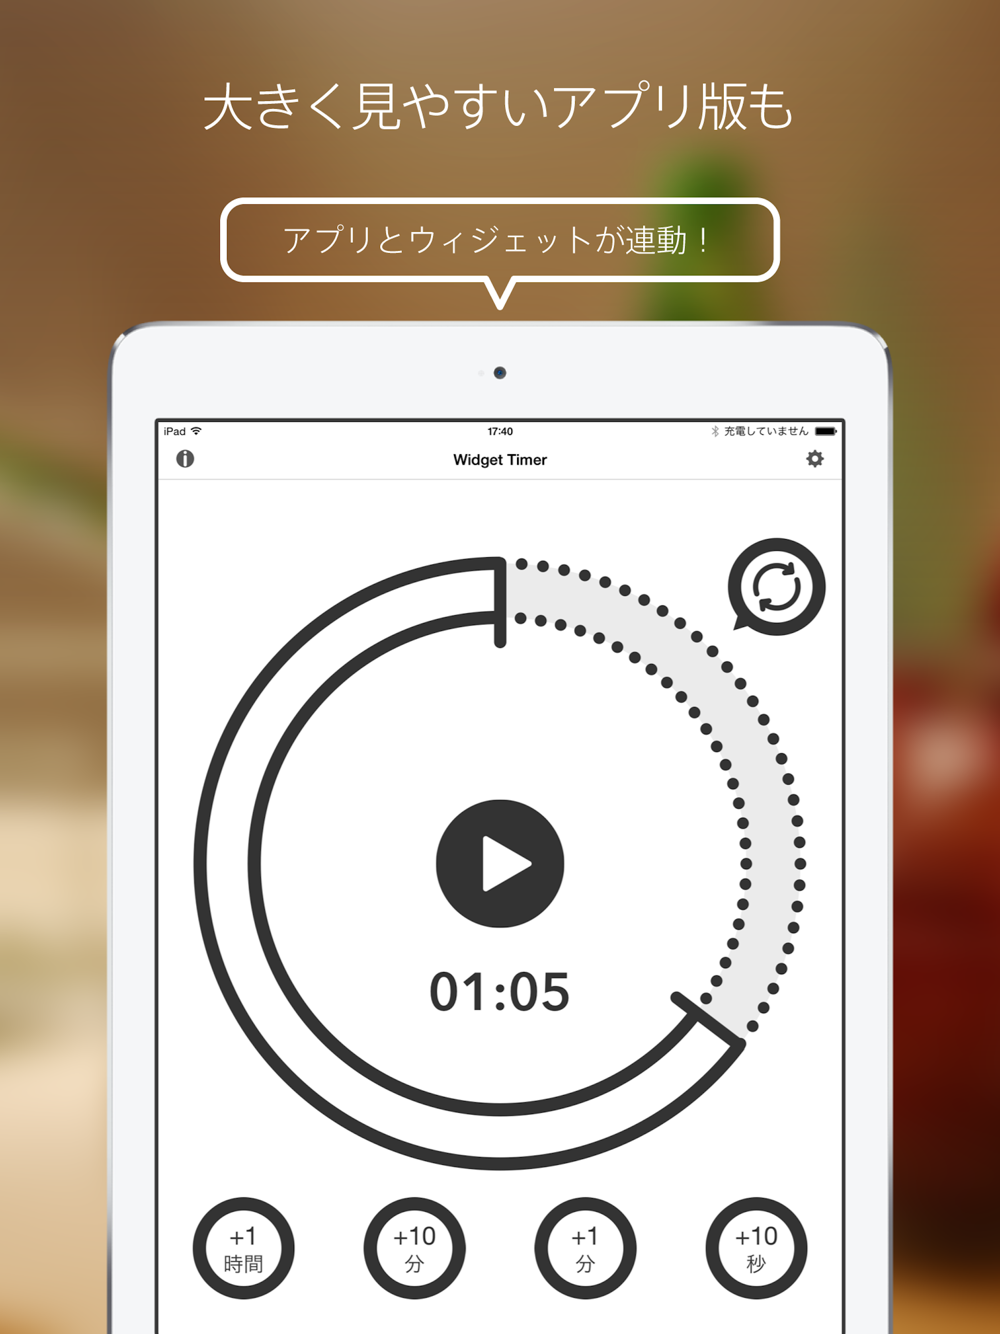 ウィジェット タイマー 通知センターで使えるシンプルなキッチンタイマー Download App For Iphone Steprimo Com